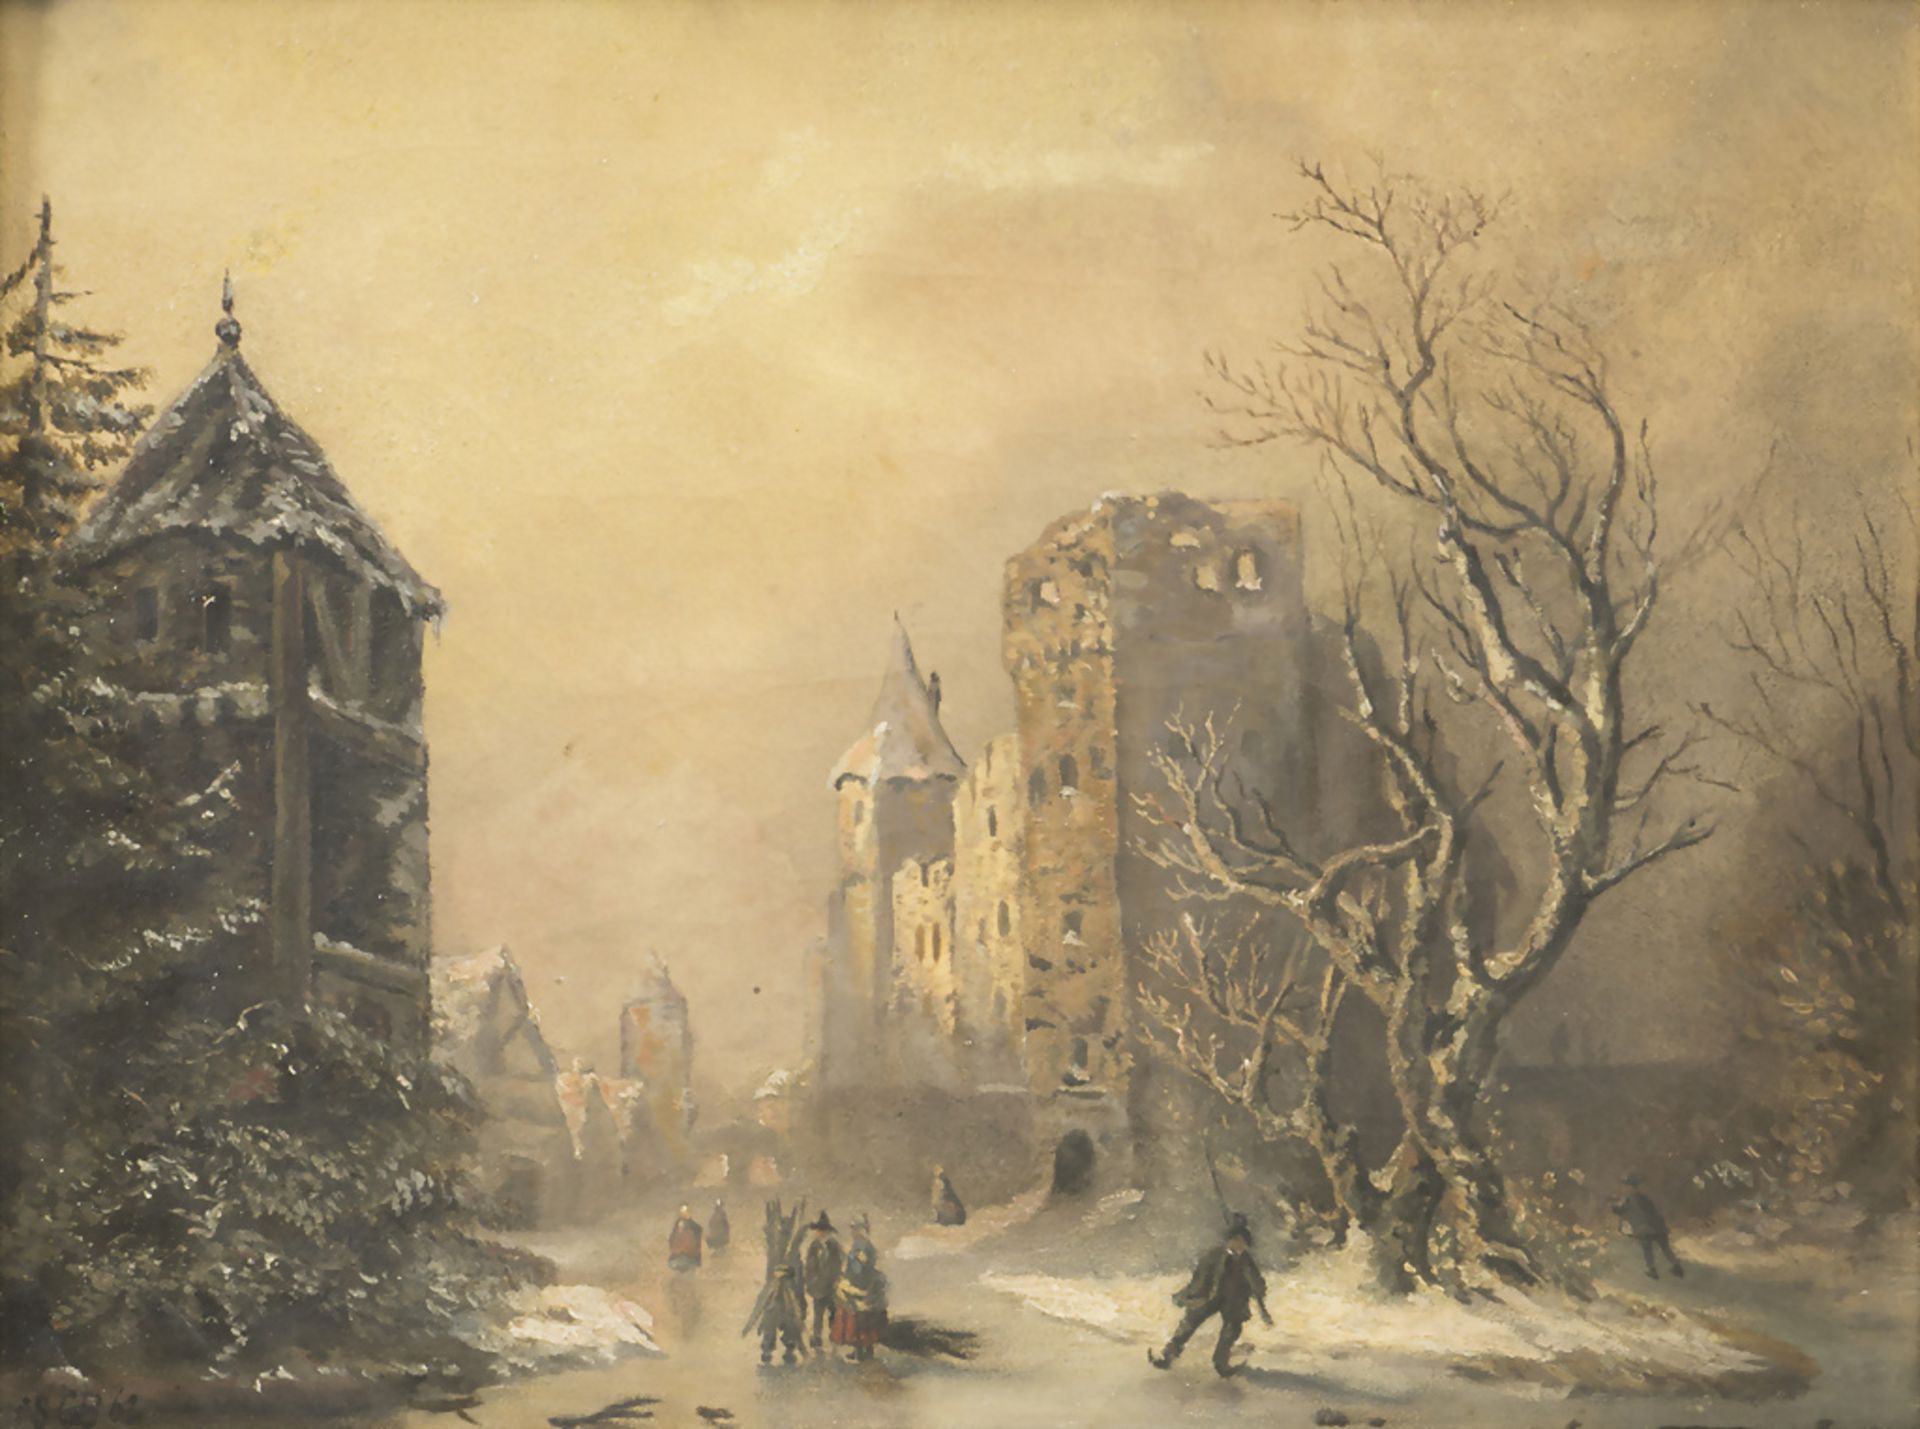 Monogrammist C.B., 'Dorf im Winter' / 'A village in wintertime', 1862.